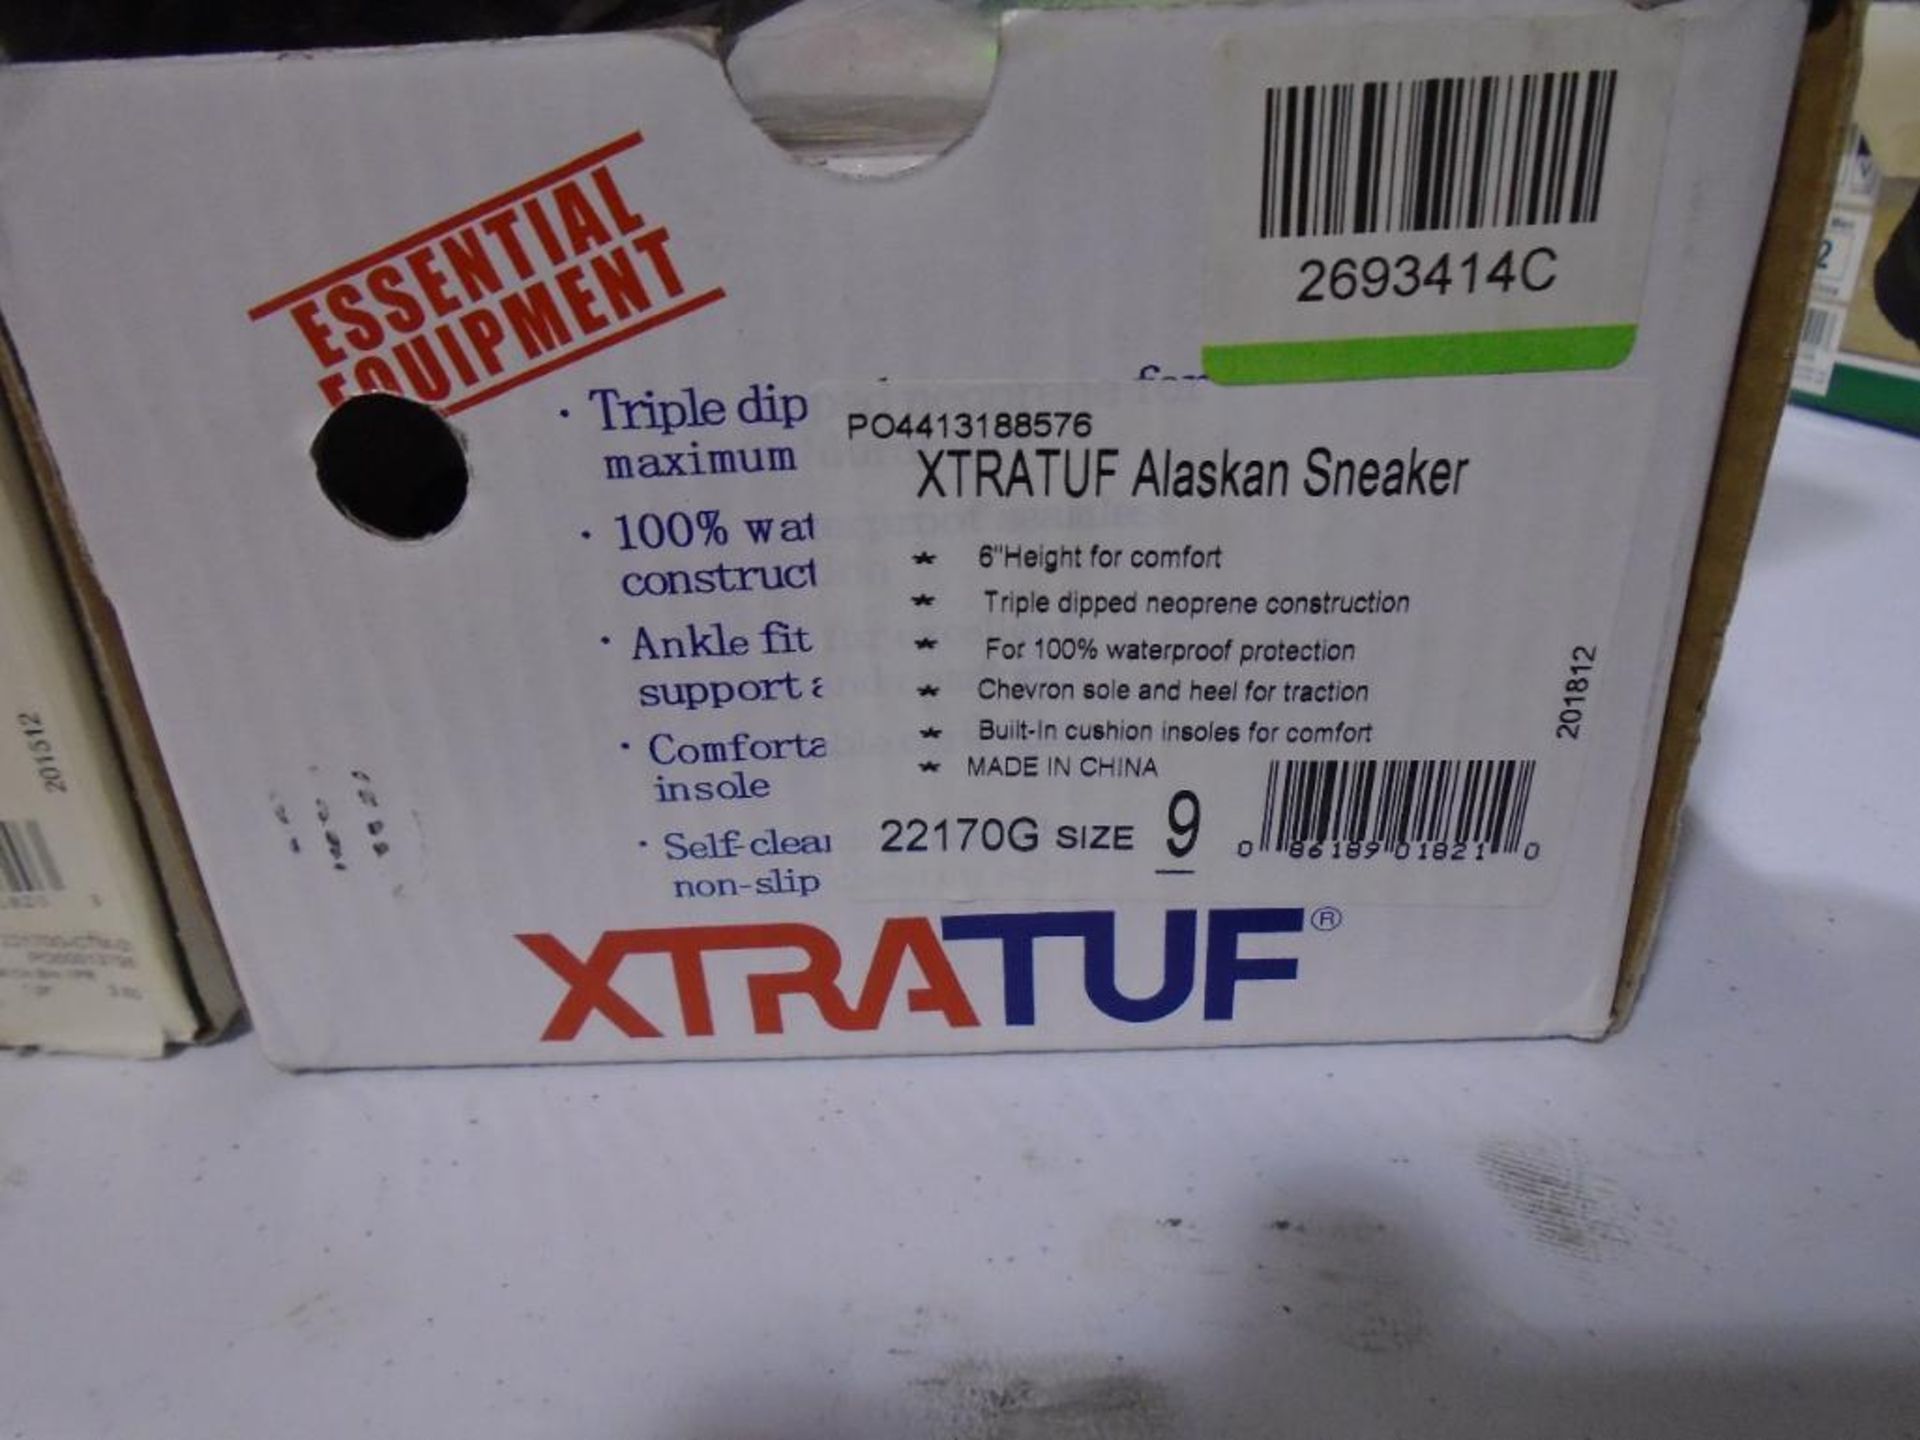 Lot of (2) size 9,8 XTRATUF Alaskan Sneakers - Image 2 of 3